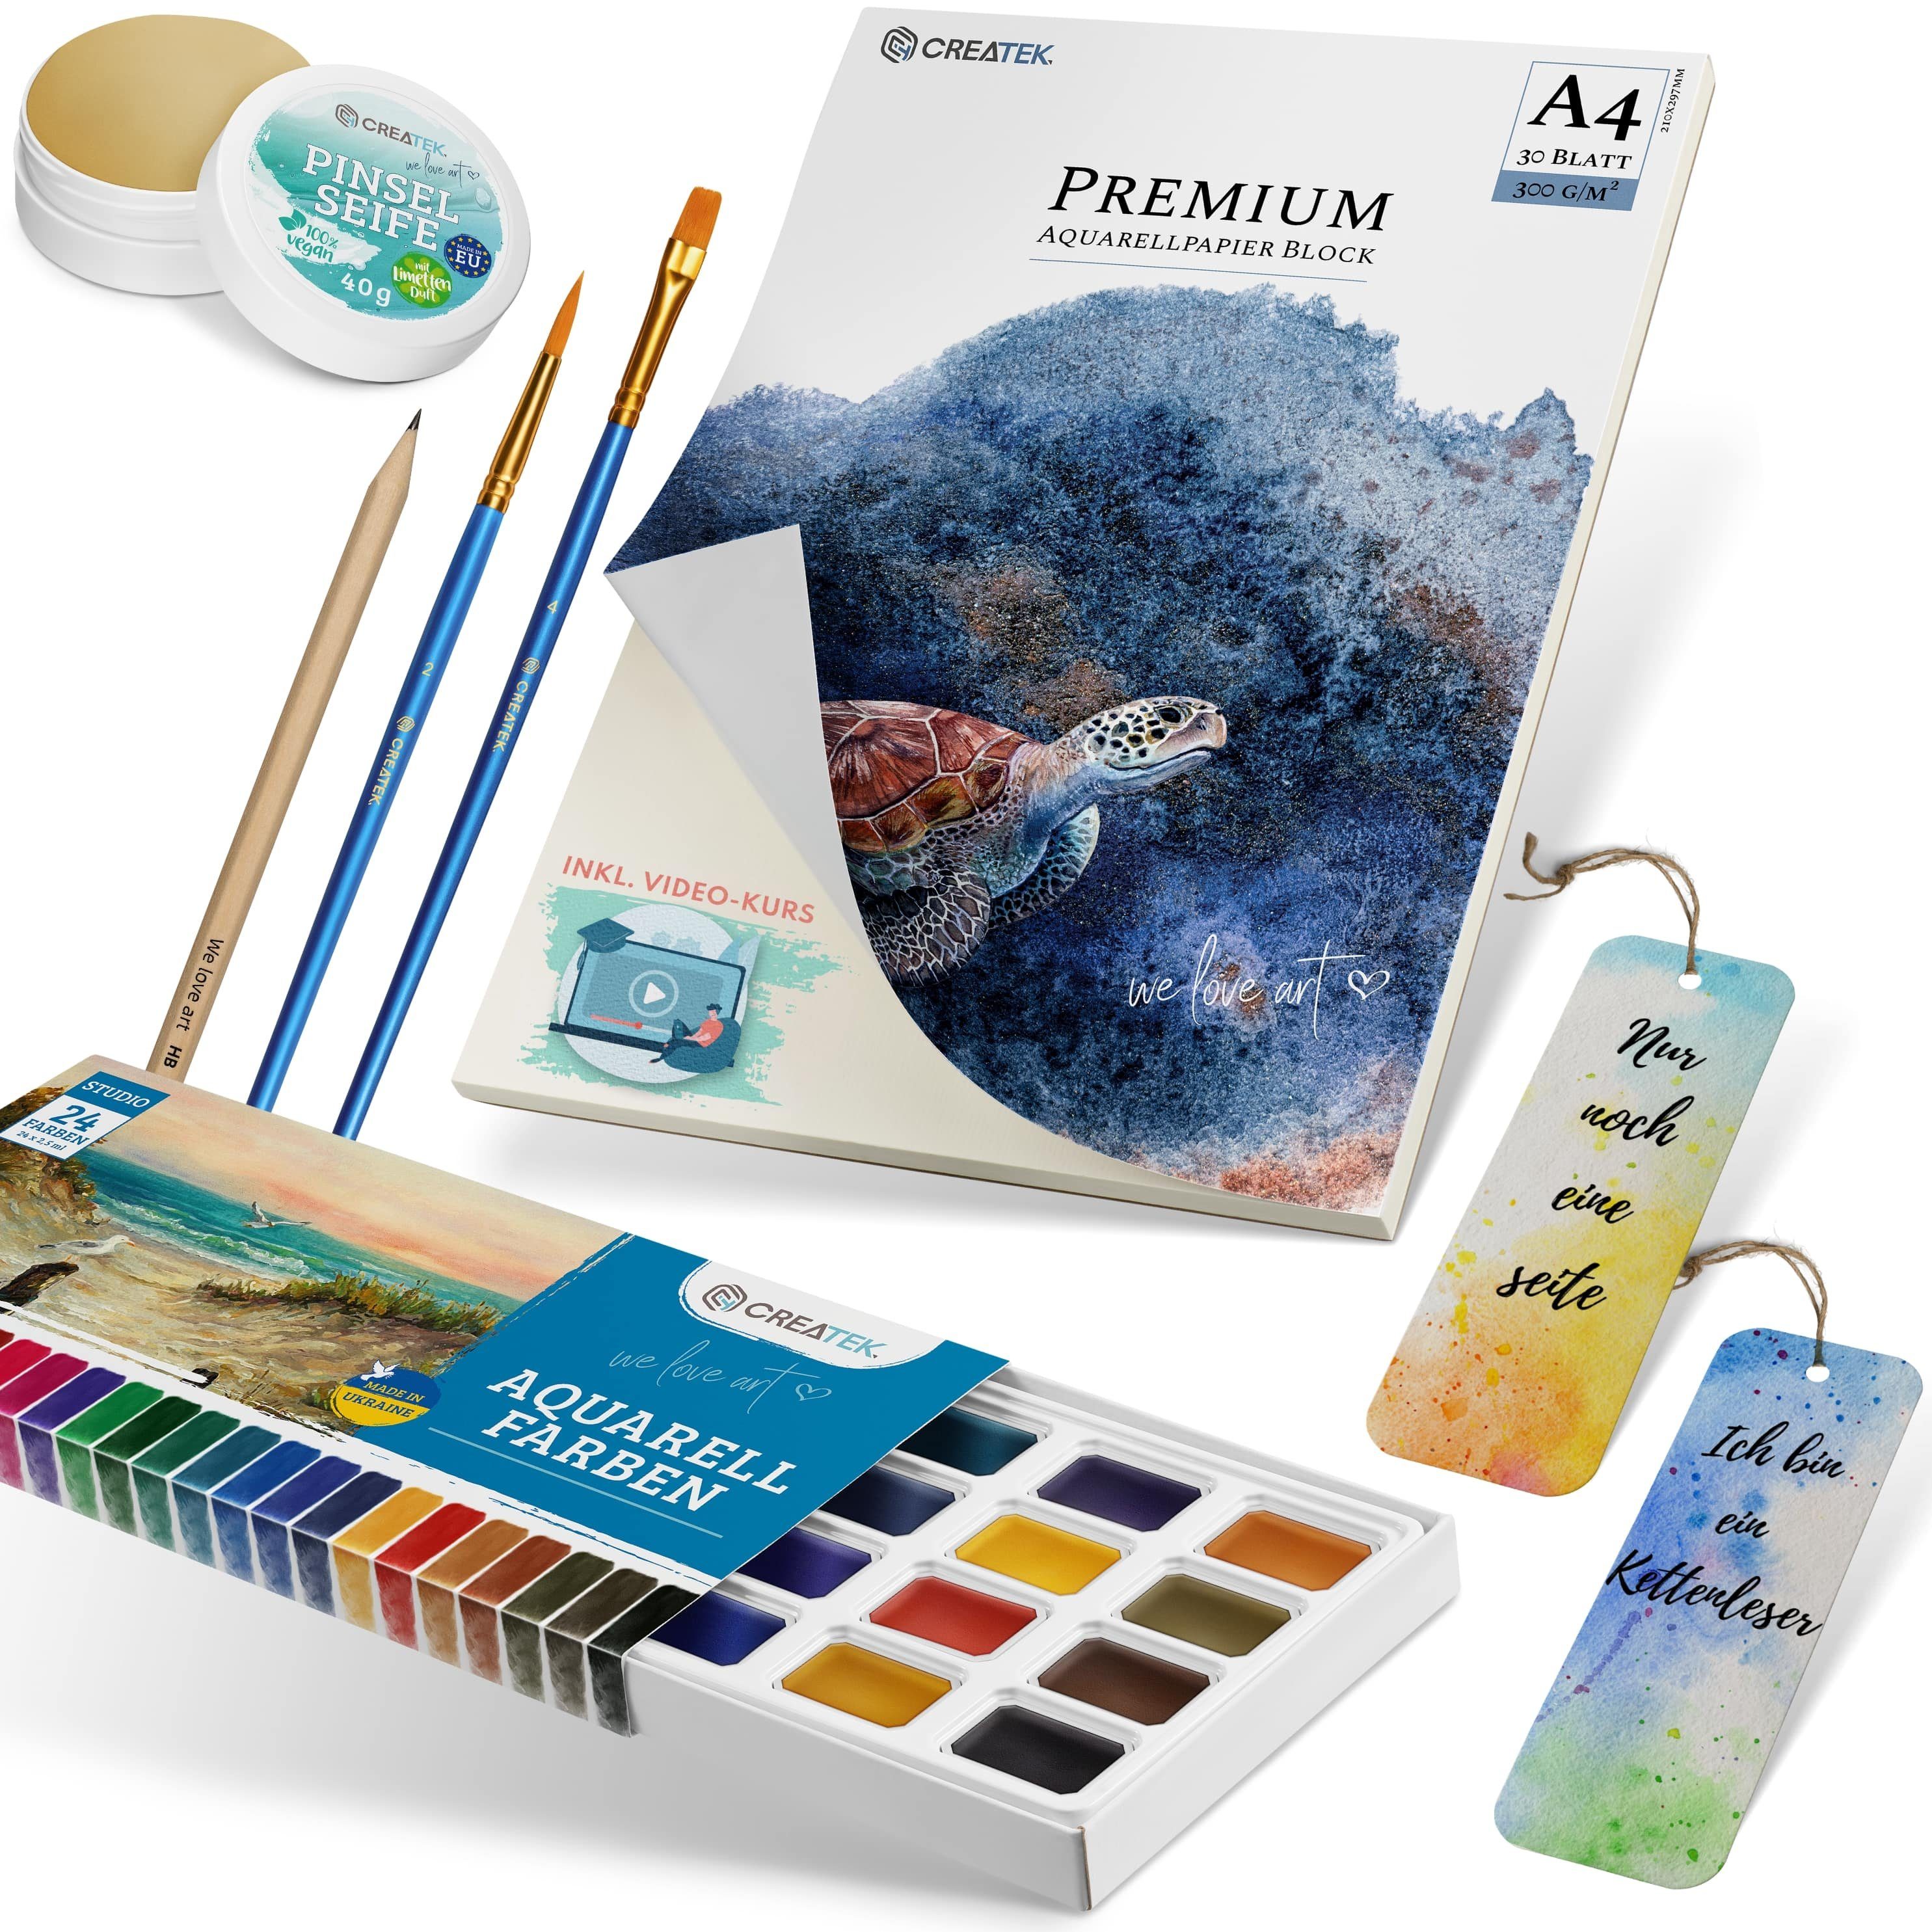 CreaTek Aquarellfarbe Aquarell Starter-Set - Aquarellfarben, Block + Videokurs & Malvorlagen, Videokurs & 400 Malvorlagen im Wert von 39,90 € Gratis dazu!